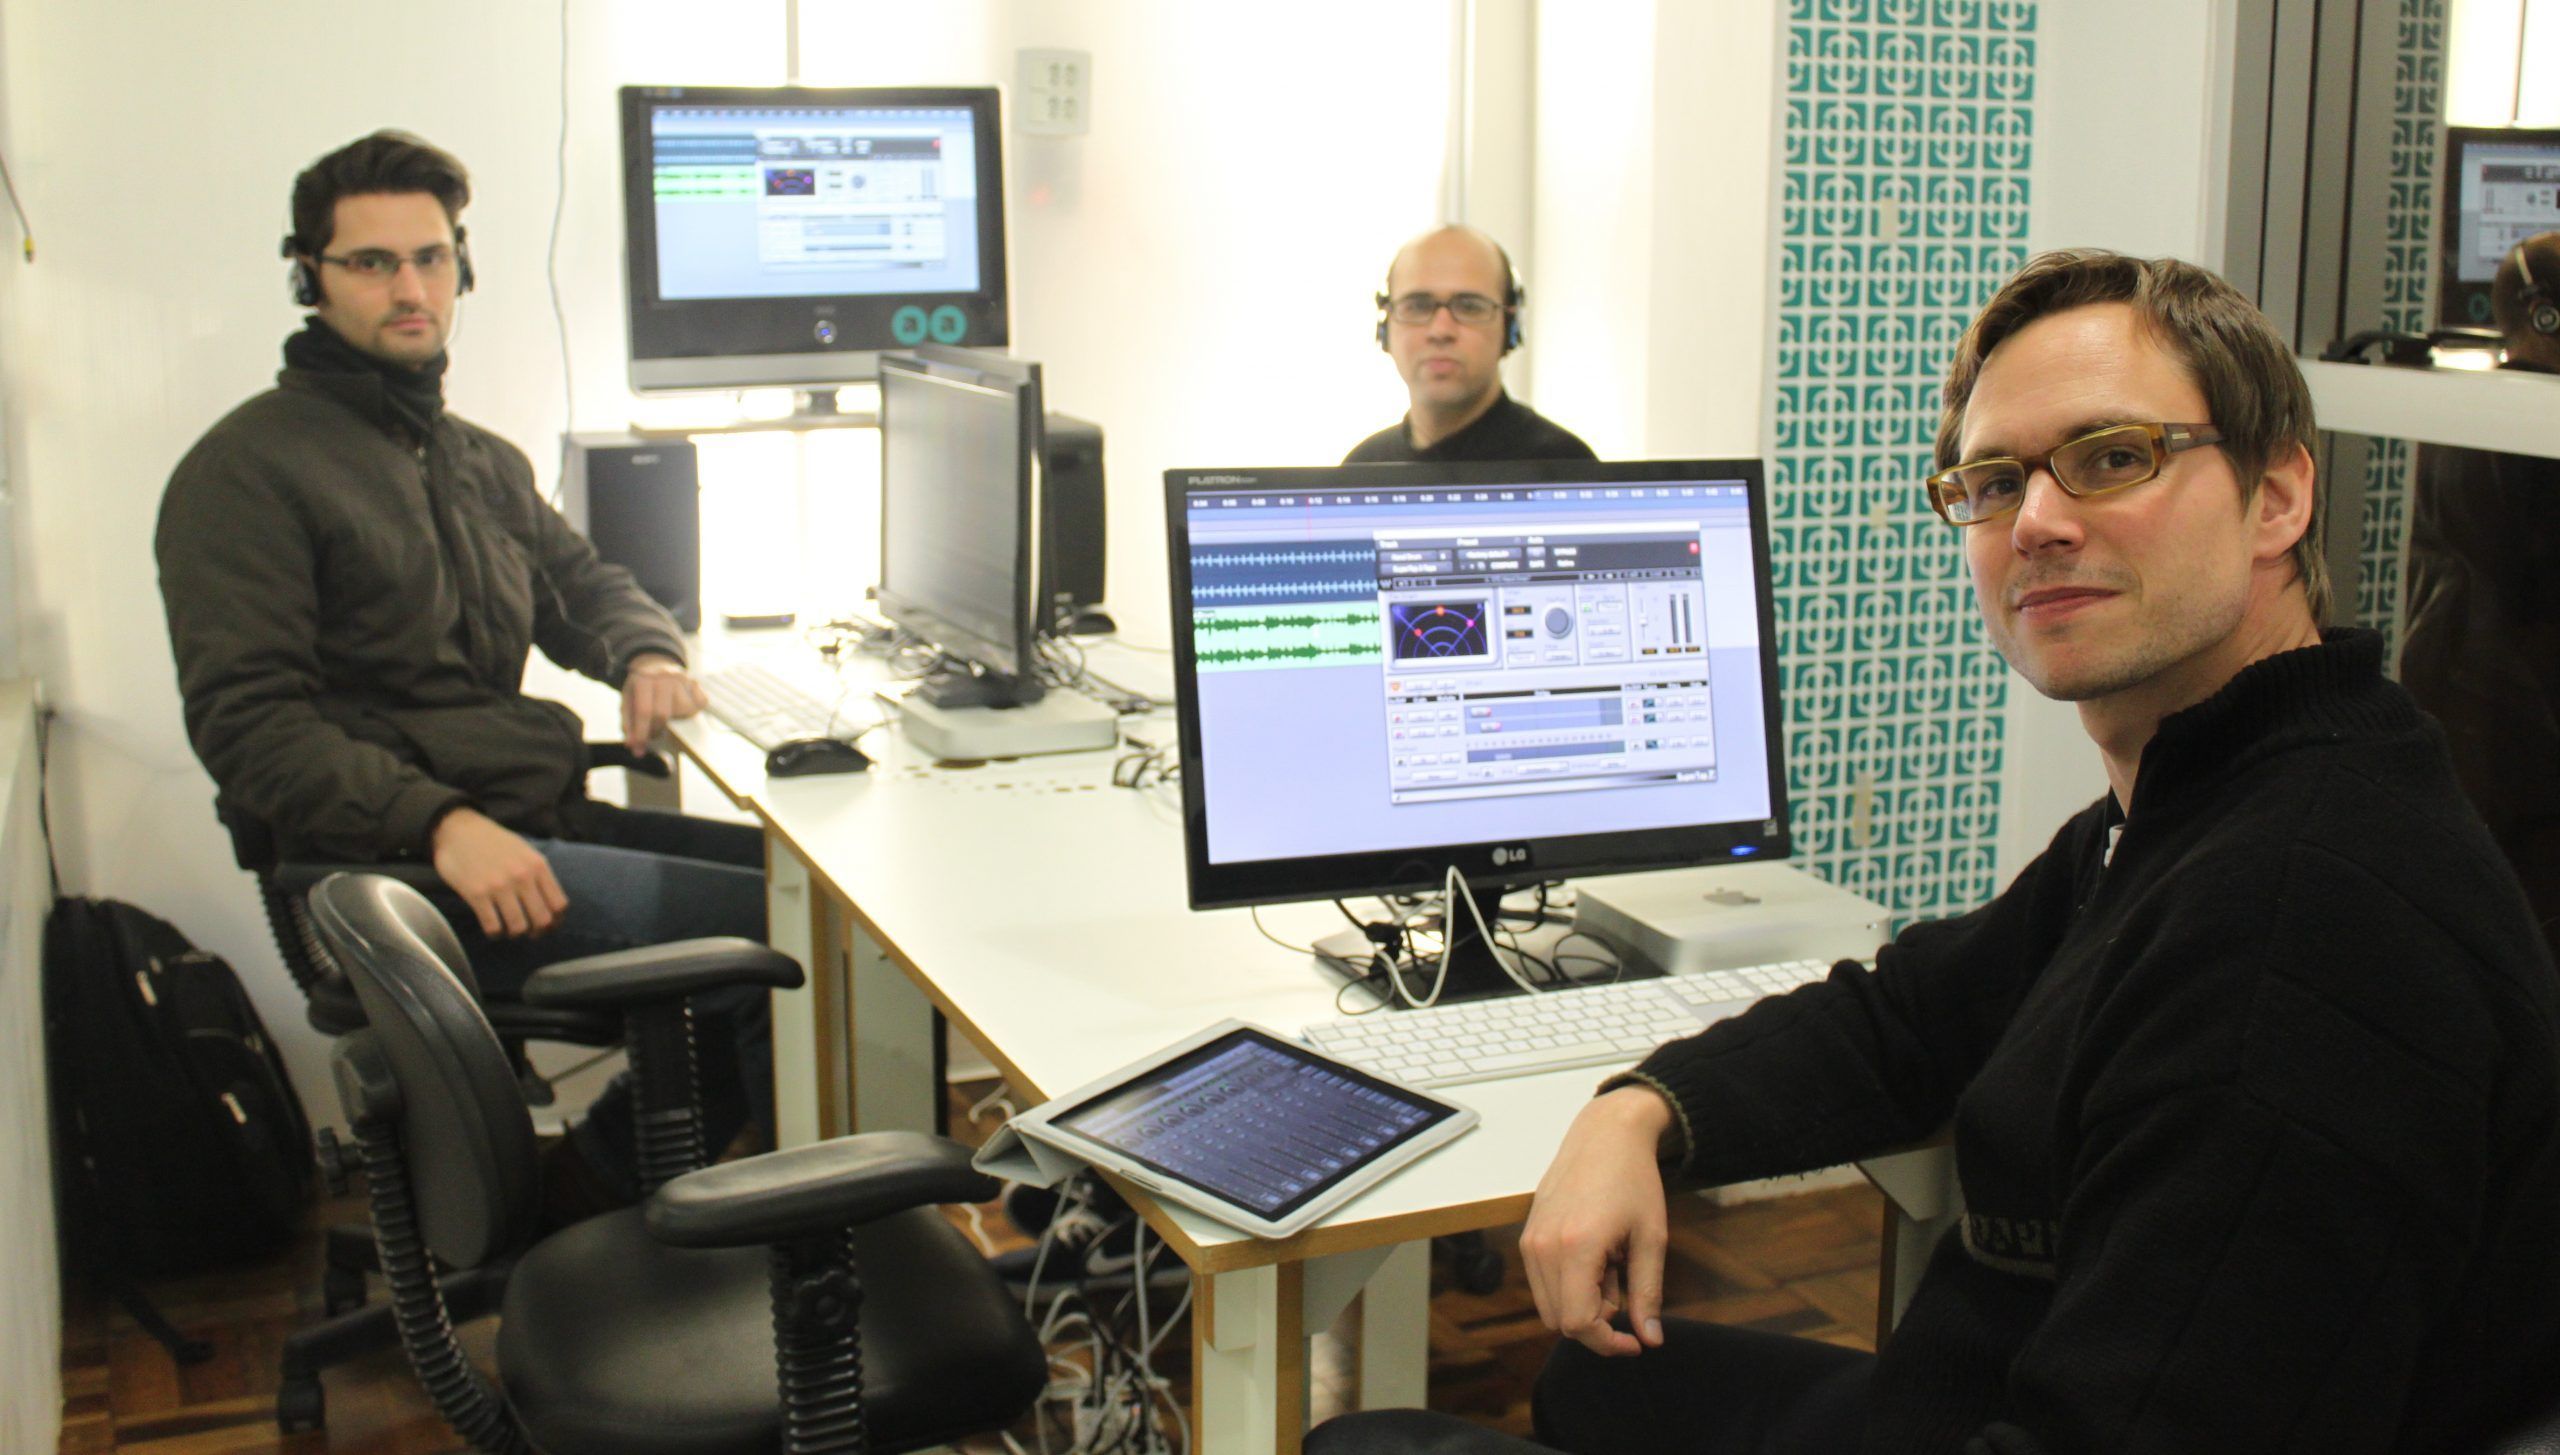 Nobert Weiher trabalhando em um programa audiovisual com mais dois colegas de equipe.